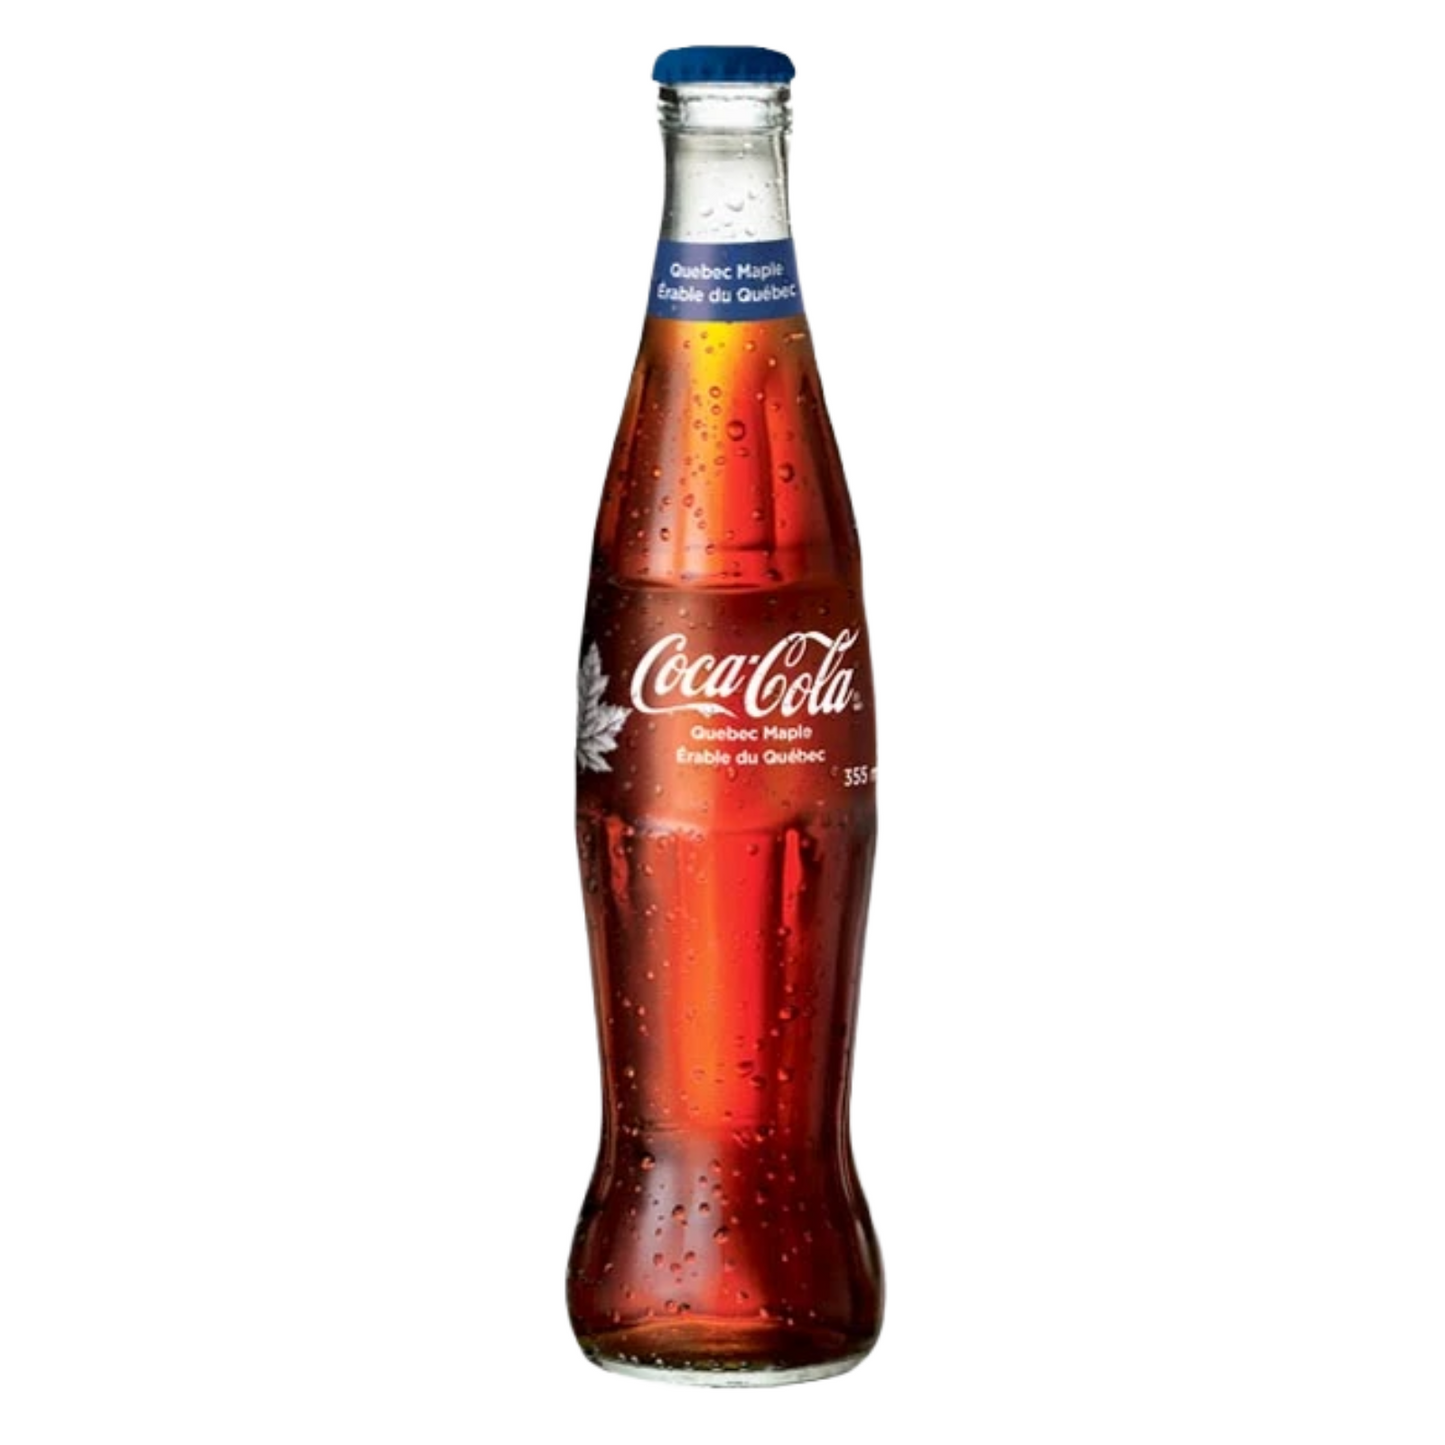 Coca-Cola Quebec Maple - 355ml